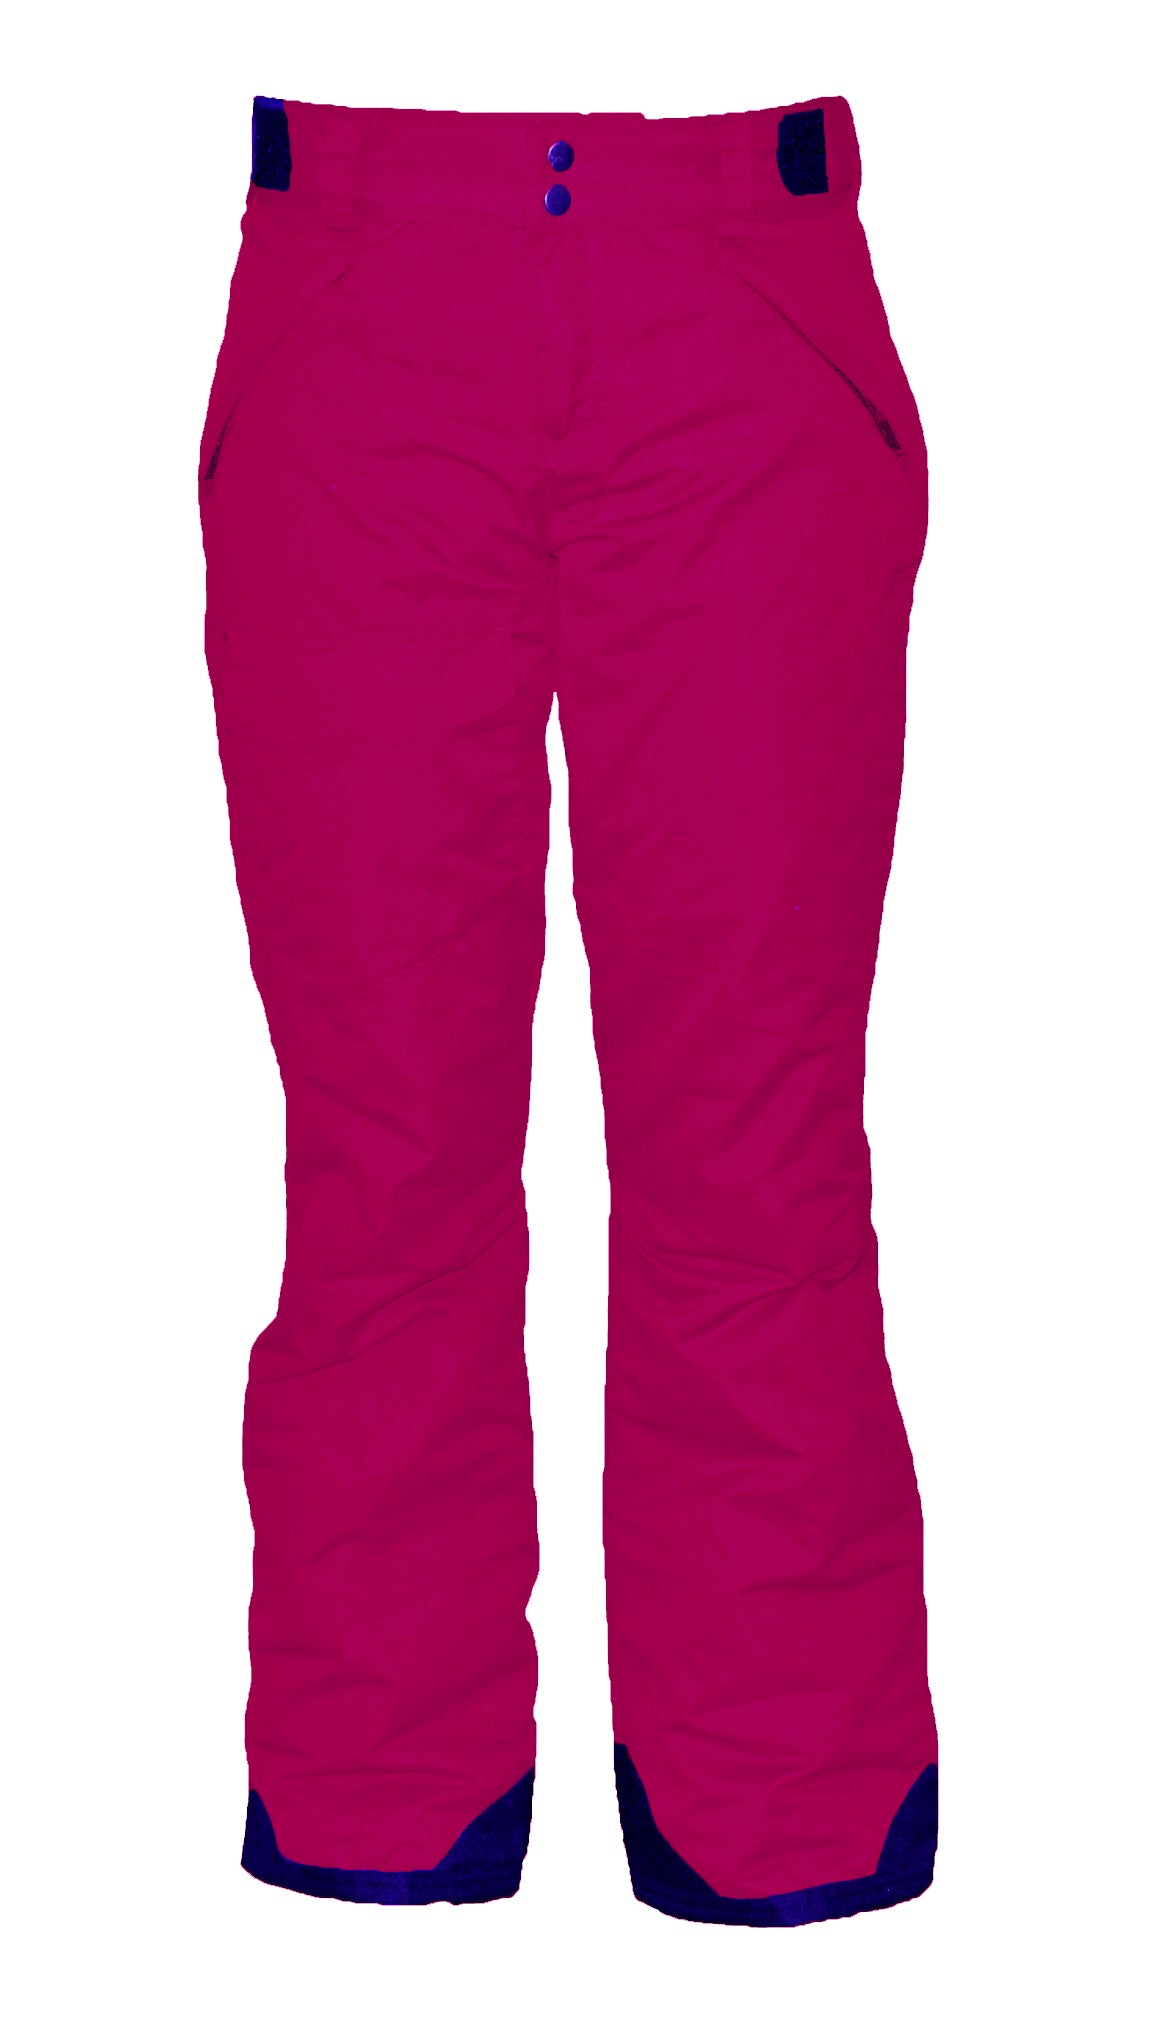 Winter Ski & Board Pants-Ladies Pulse Rider Ski Pant